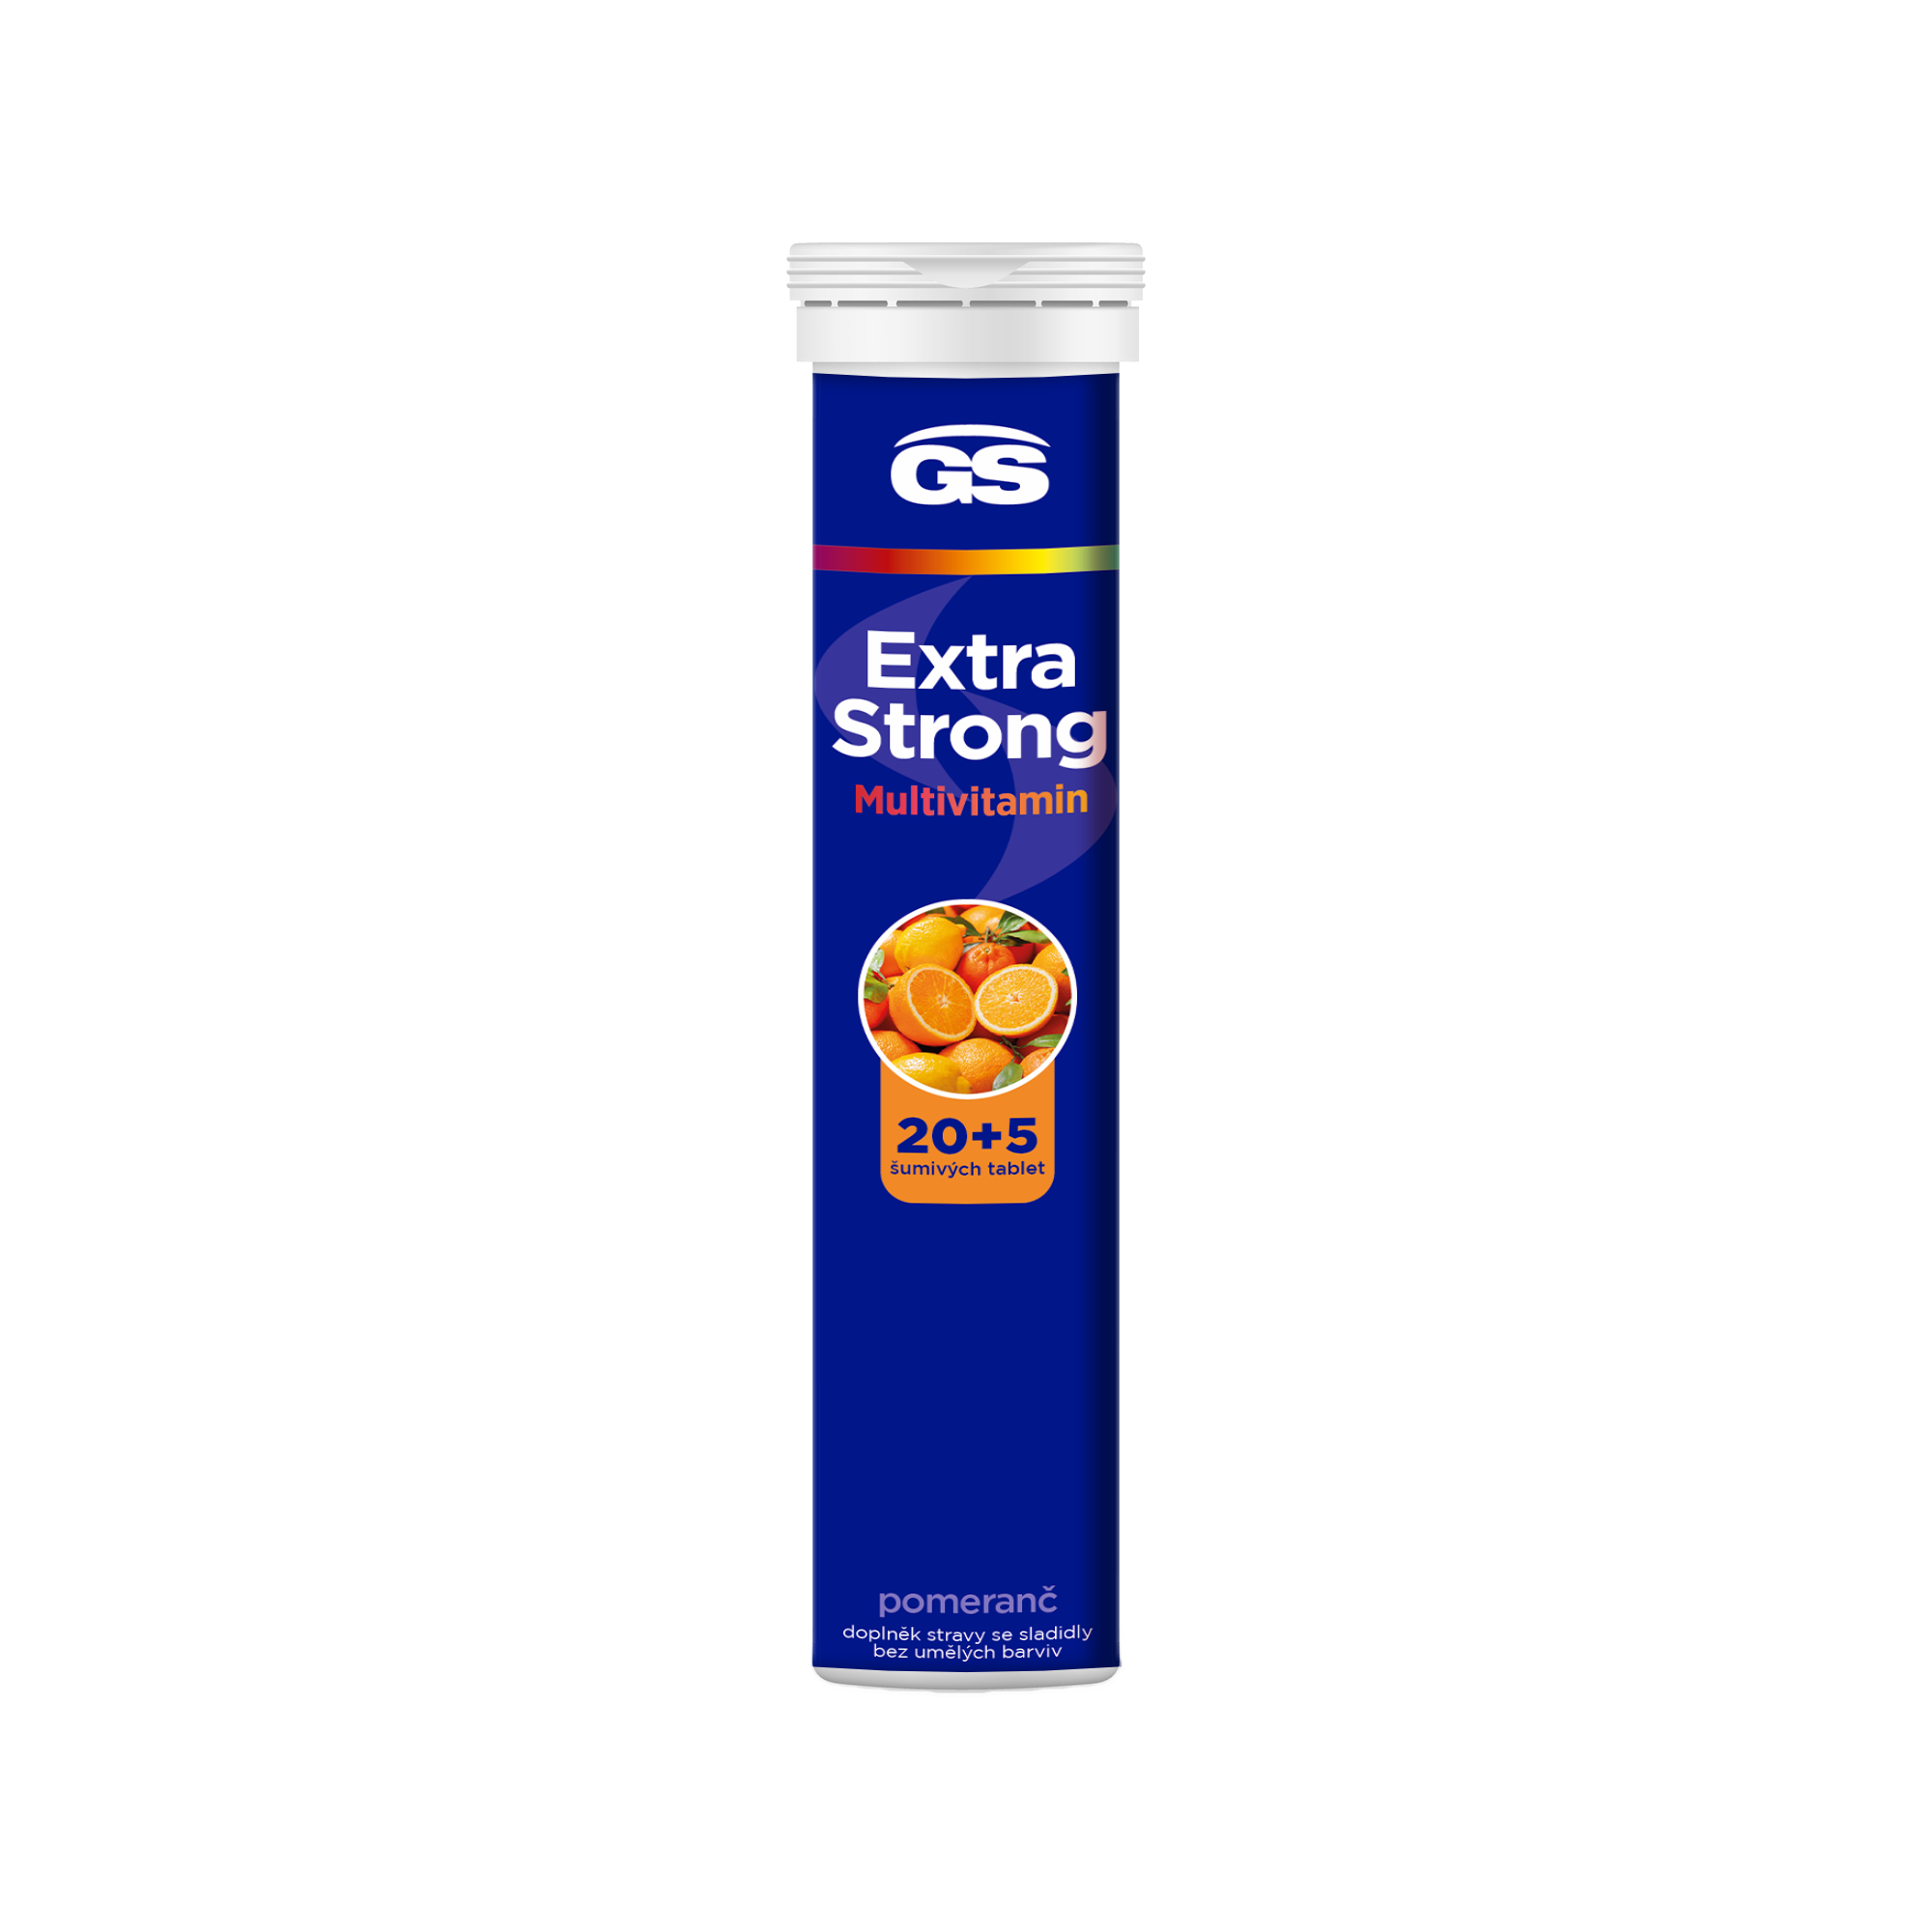 GS Extra Strong Multivitamin pomaranč eff.tbl.205